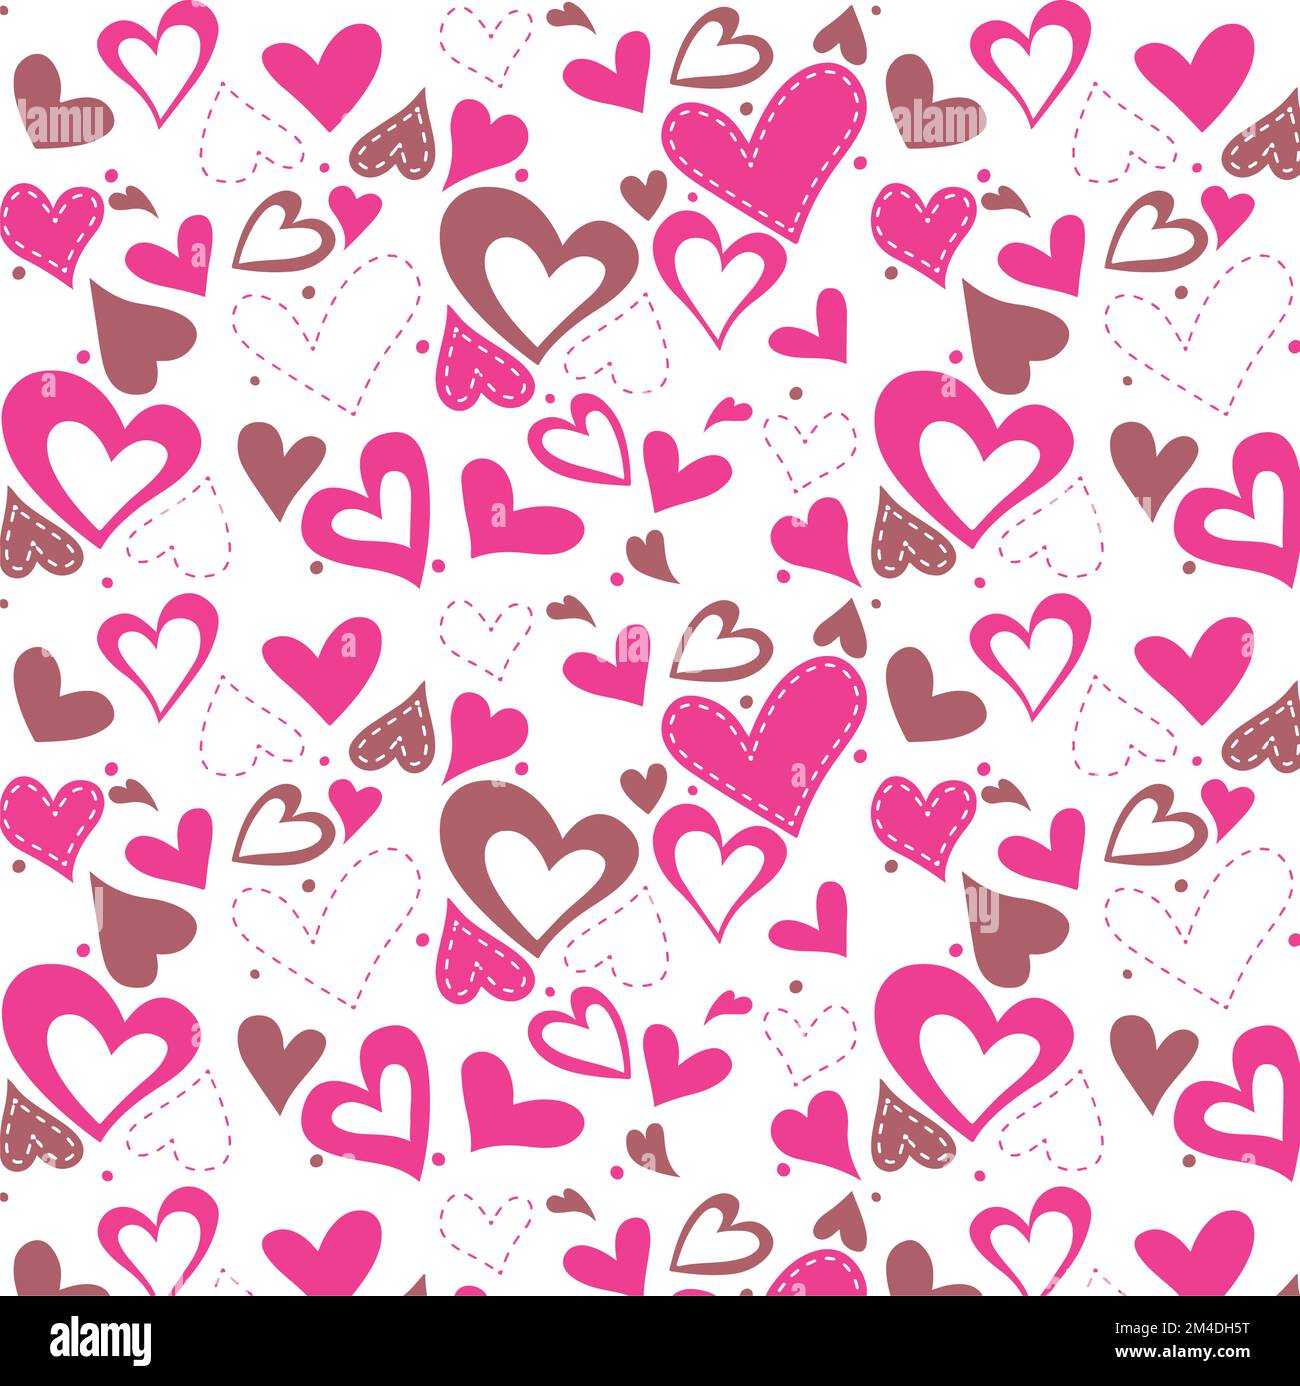 Hintergrund für farbige Herzen festgelegt. Herzsymbol. Herzsymbol. Geformtes Logo. Romantik, Valentinstag, Romantik, Konzept, Karte, Ehe, zwei, Vale Stock Vektor